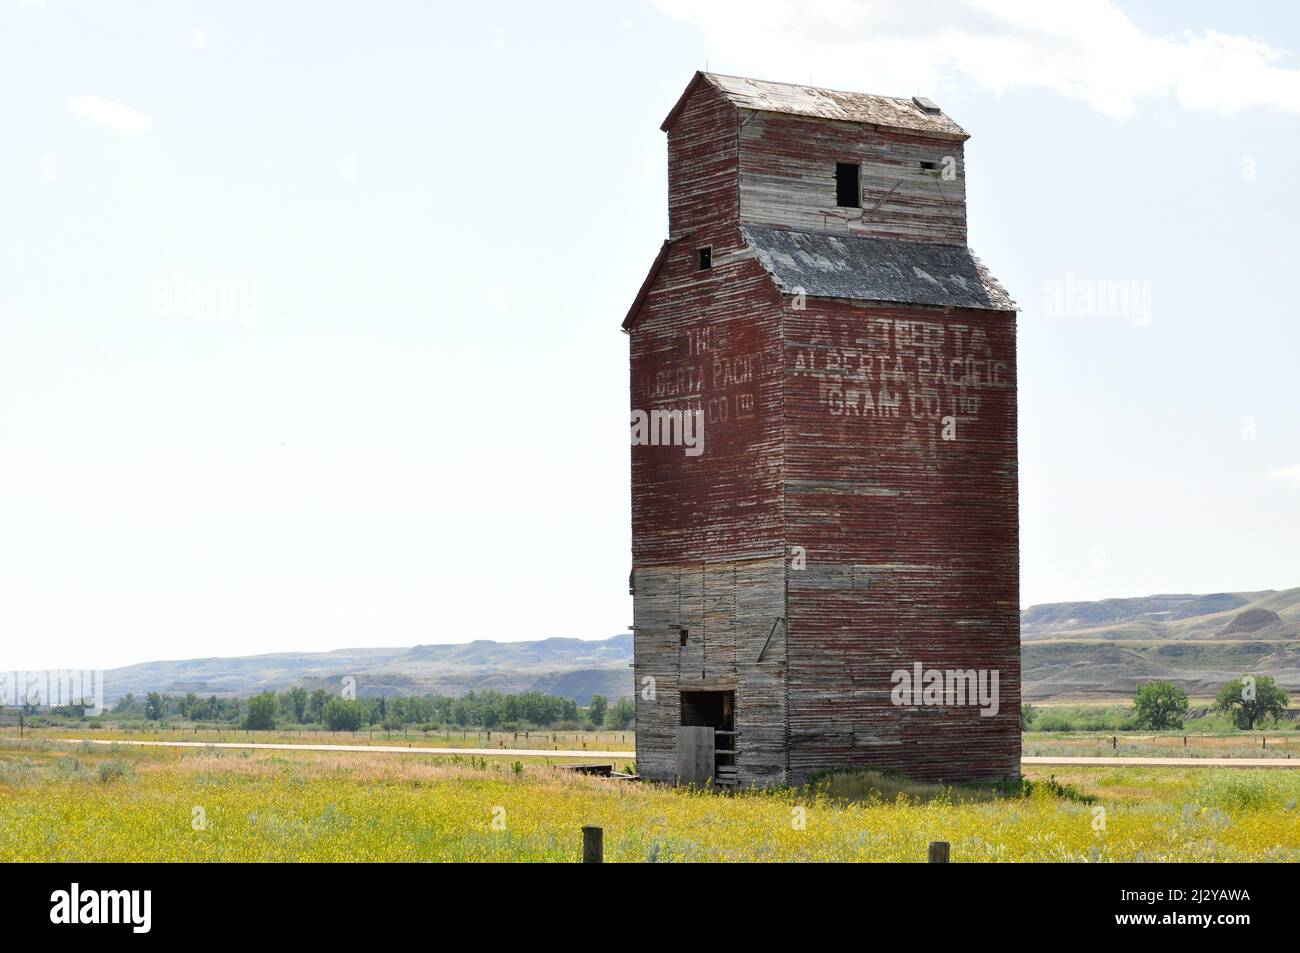 Der alte Aufzug von Alberta Pacific Grain Co Ltd in Dorothy, Alberta. 9. August 2011. Stockfoto